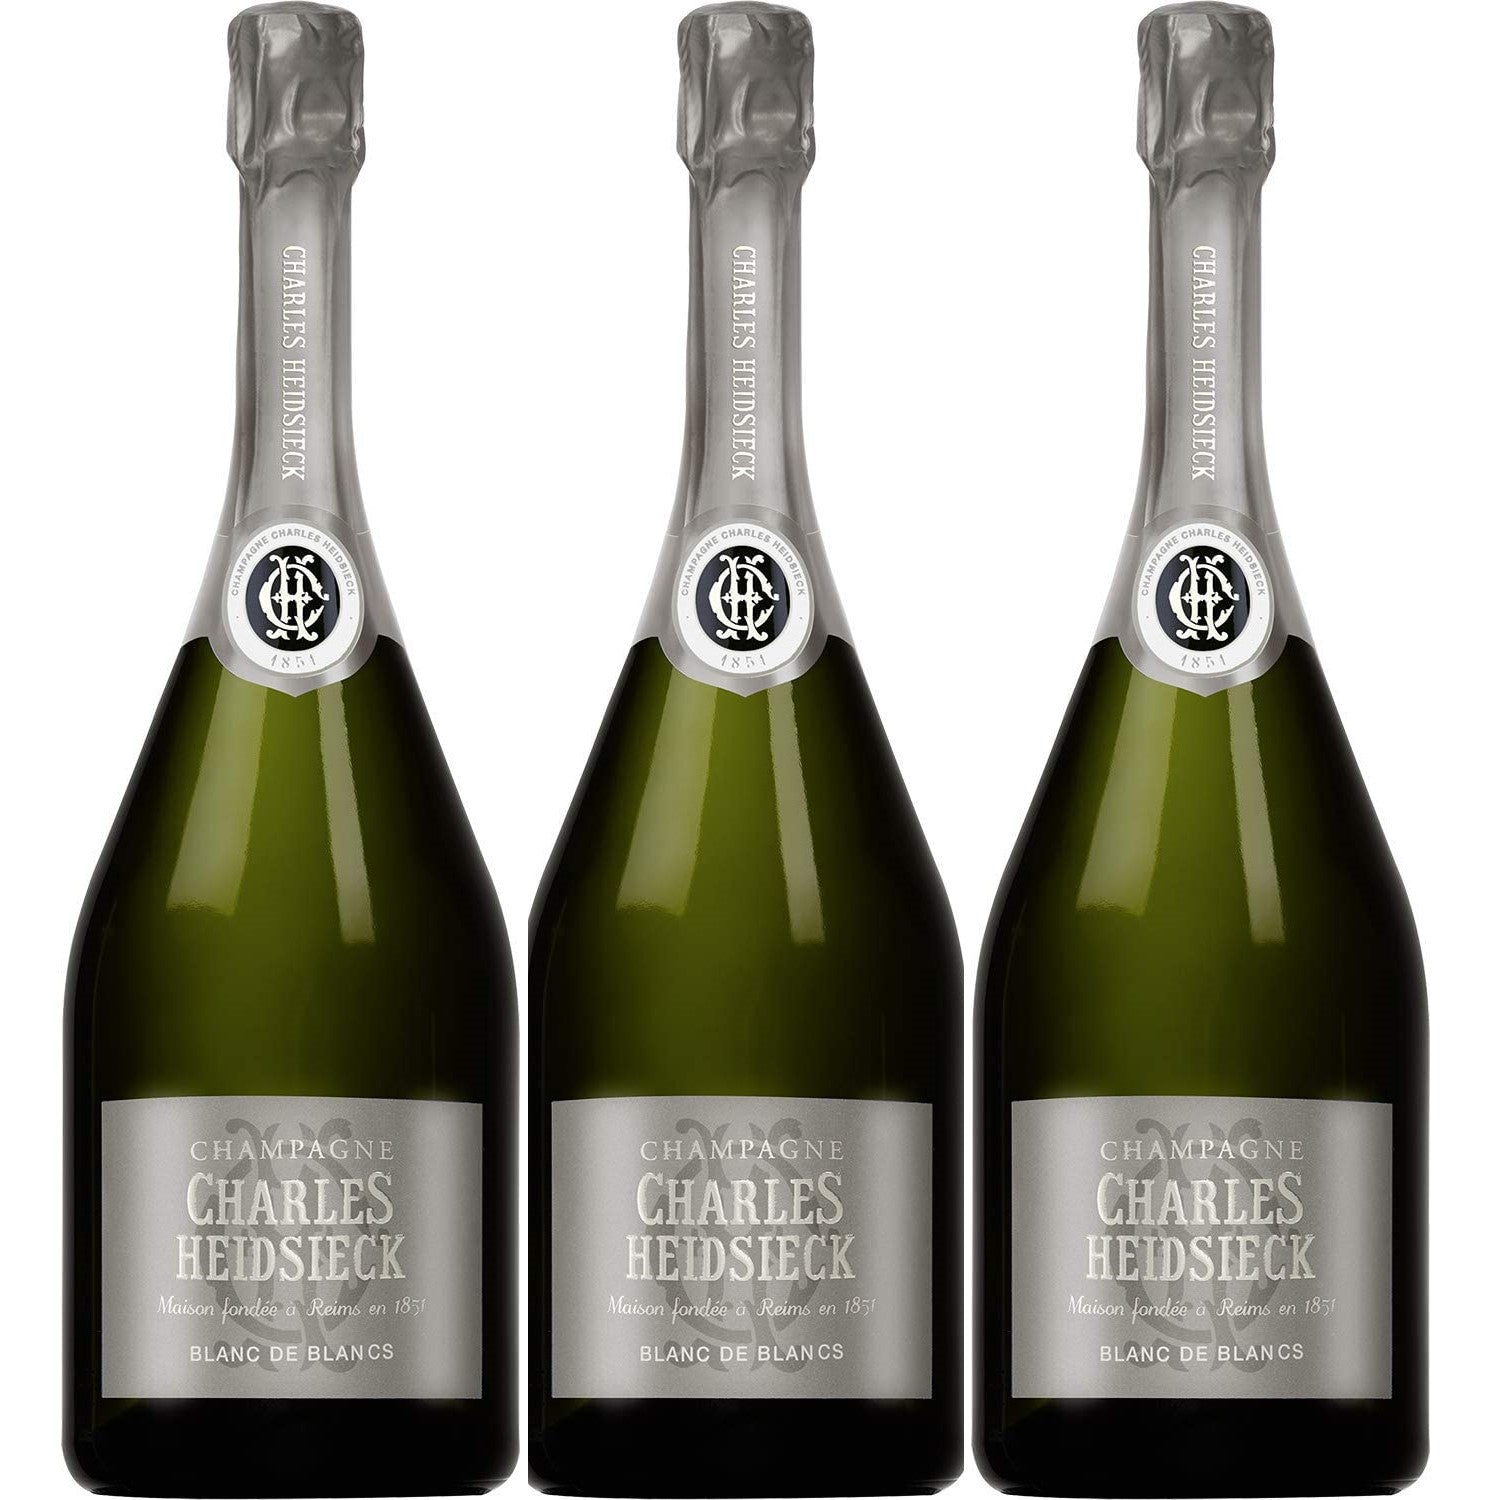 Charles Heidsieck Blanc de Blancs Champagne Champagner Schaumwein Frankreich (3 x 0.75l) - Versanel -